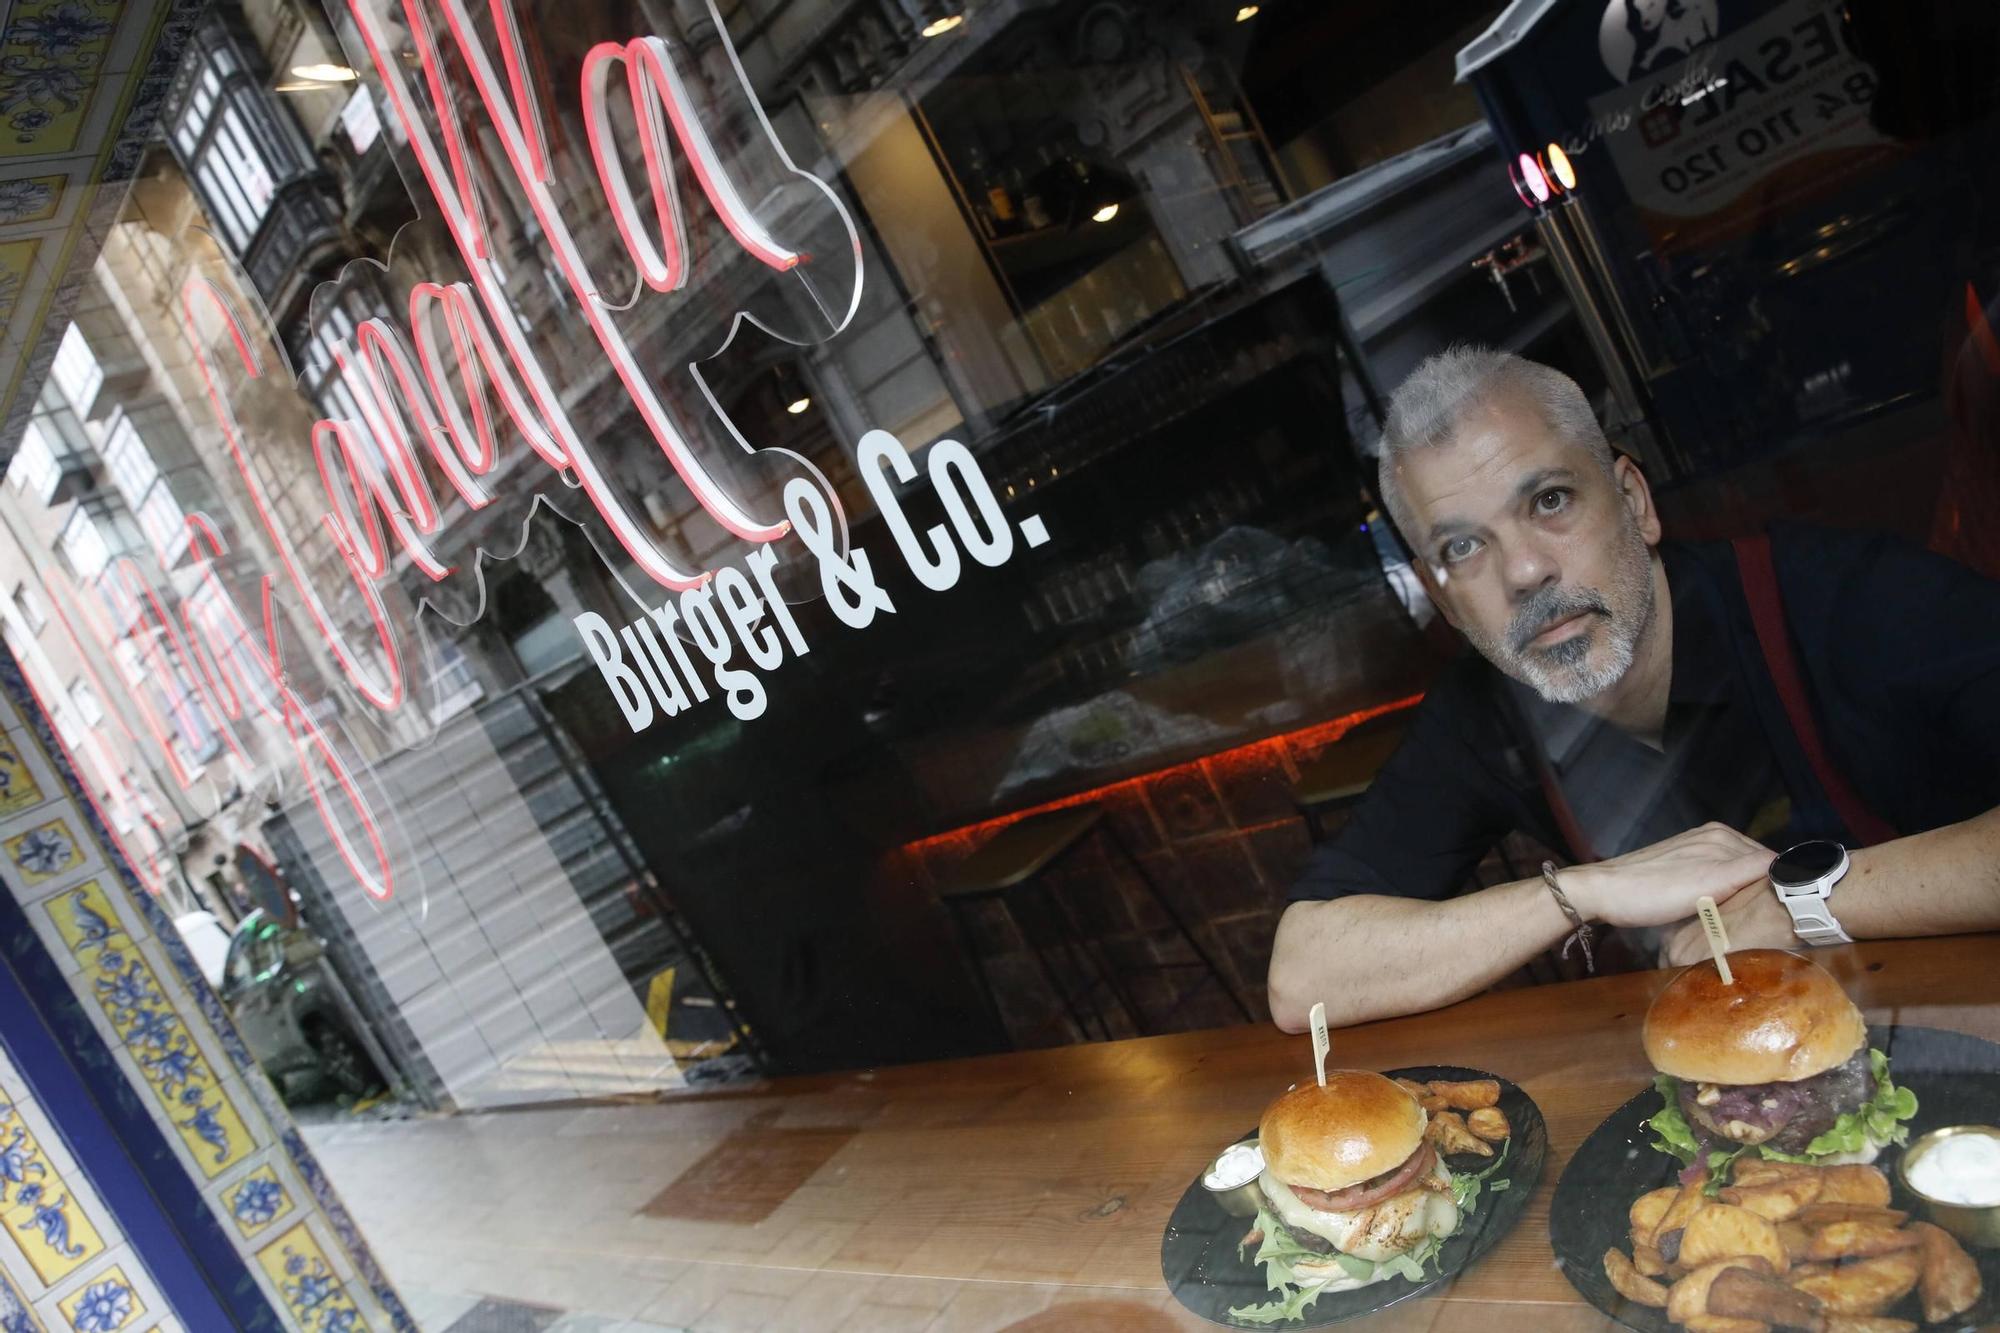 La milla de oro de las hamburguesas está en Gijón, en imágenes